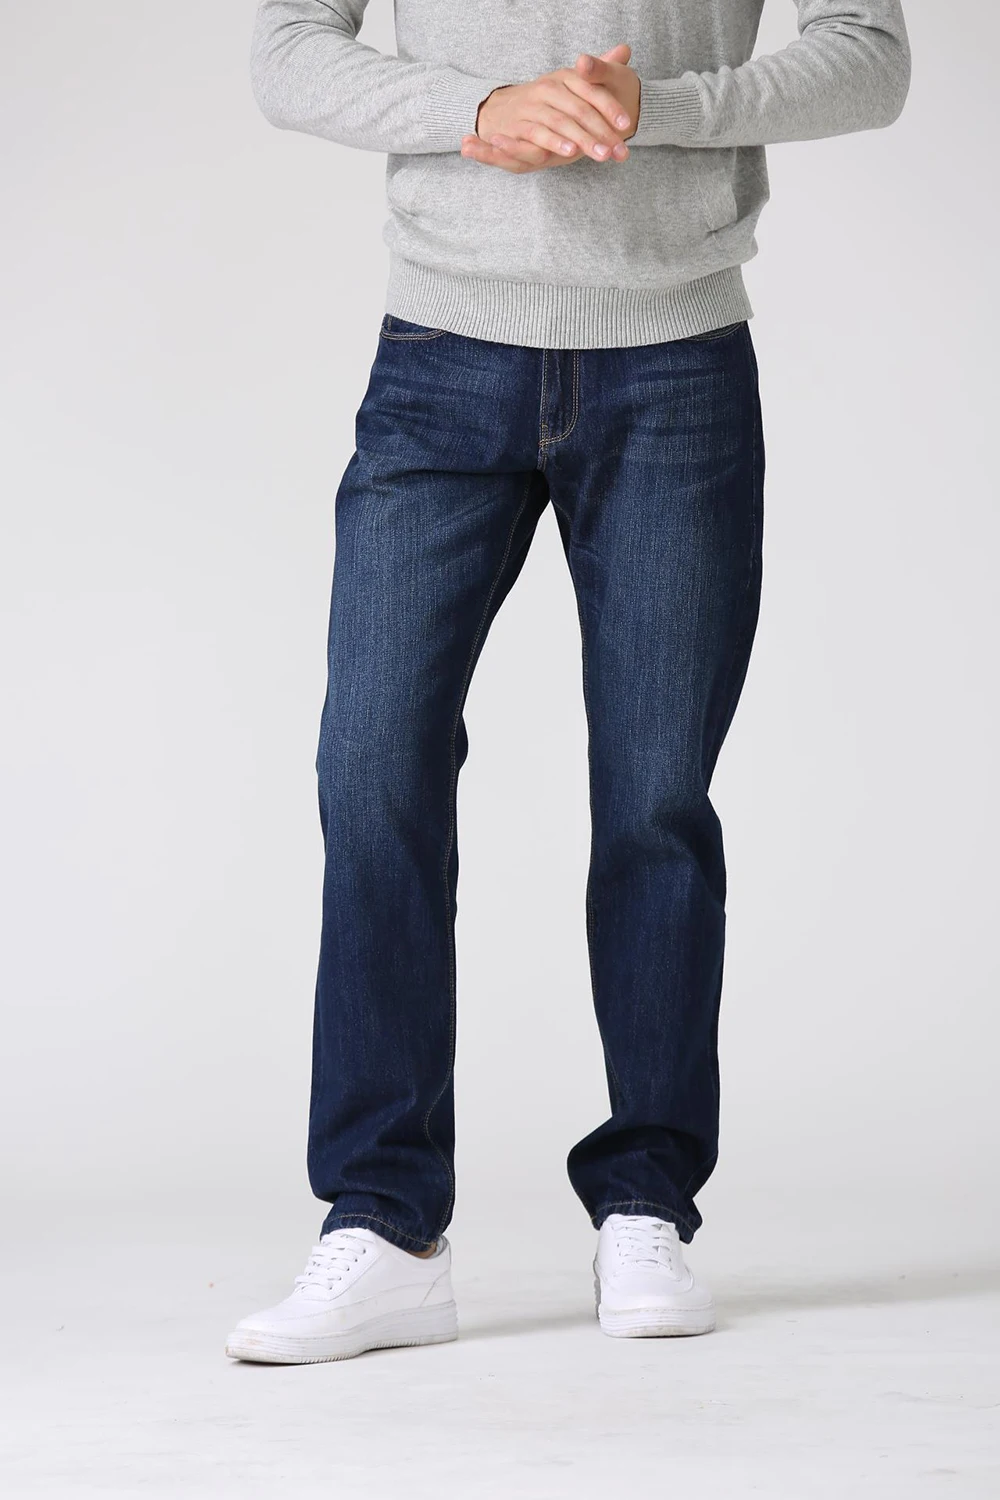 Мягкие мужские джинсы с обезьяной, хлопок, красный цвет, свободные, большие размеры, прямые, повседневные, мужские джинсы